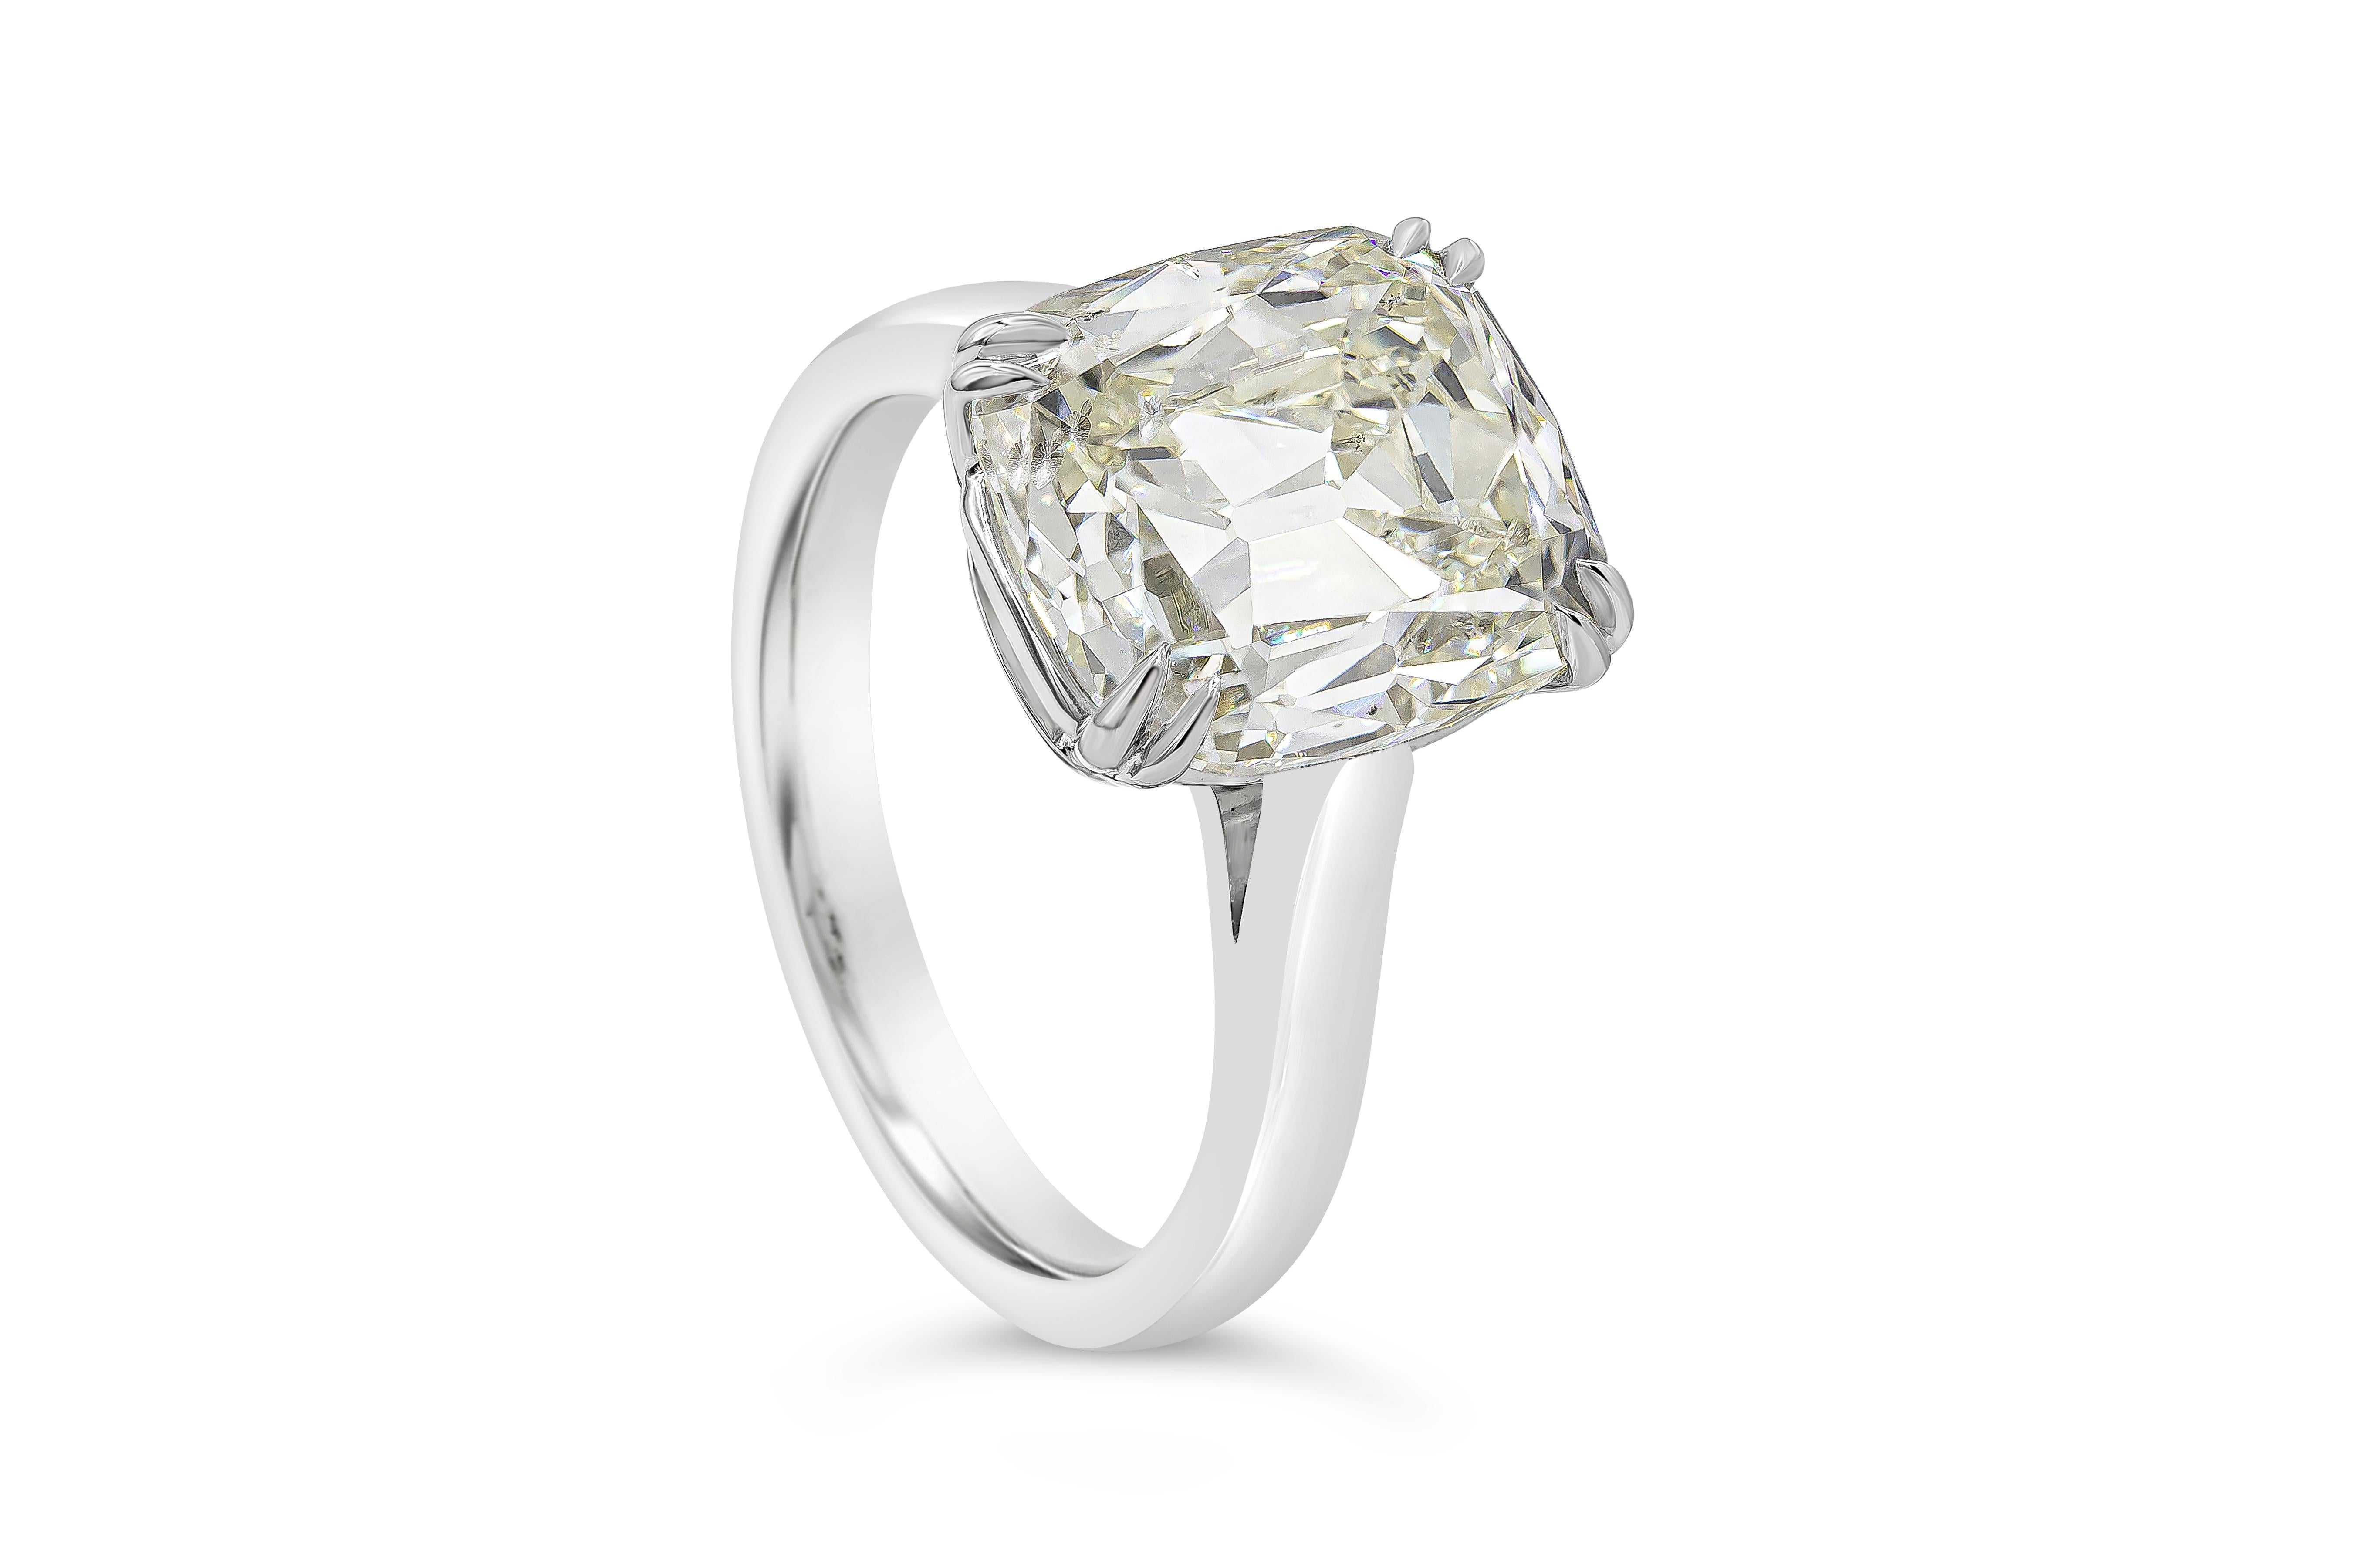 Ein zeitloser Verlobungsring mit einem GIA-zertifizierten Diamanten im Kissenschliff von 5,53 Karat, Farbe M und Reinheit SI2. Hergestellt aus poliertem Platin. Größe 6 US und Größenänderung auf Anfrage. 

Roman Malakov ist ein Unternehmen, das sich